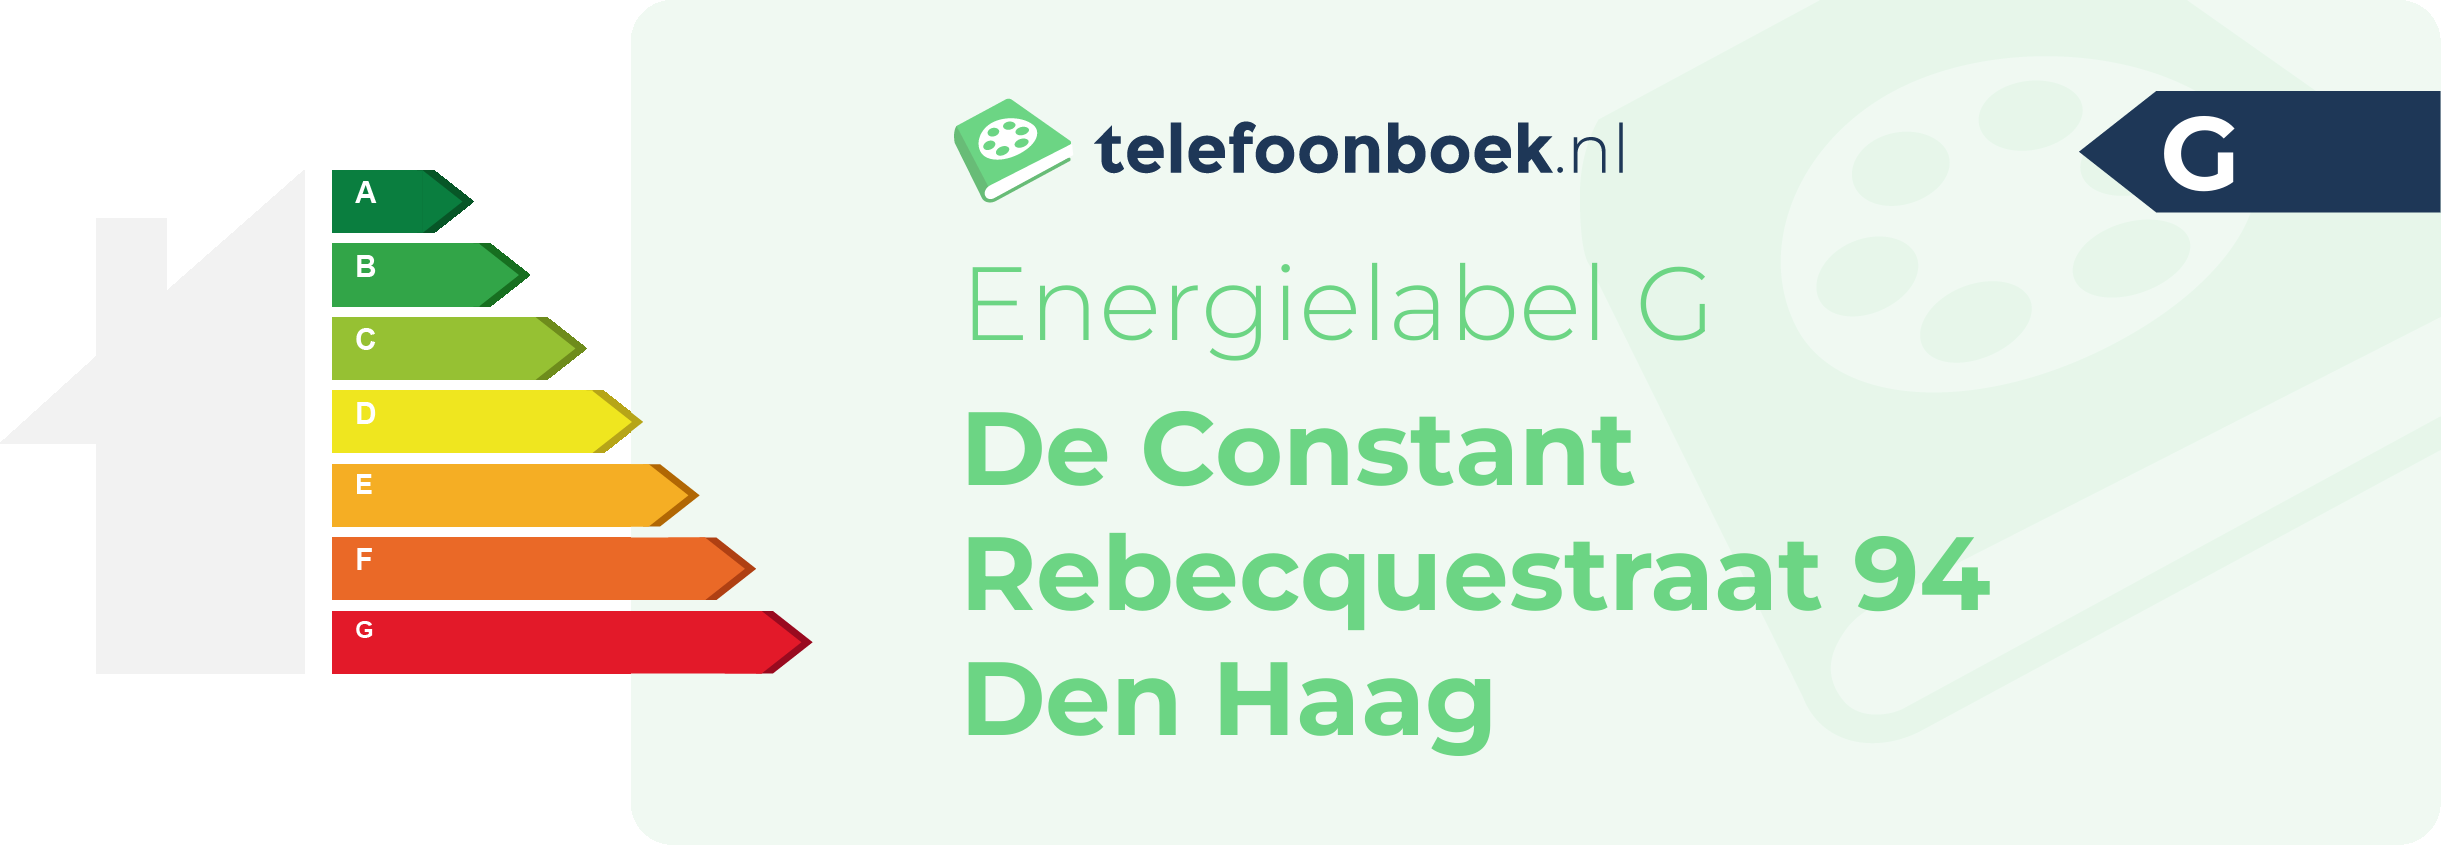 Energielabel De Constant Rebecquestraat 94 Den Haag